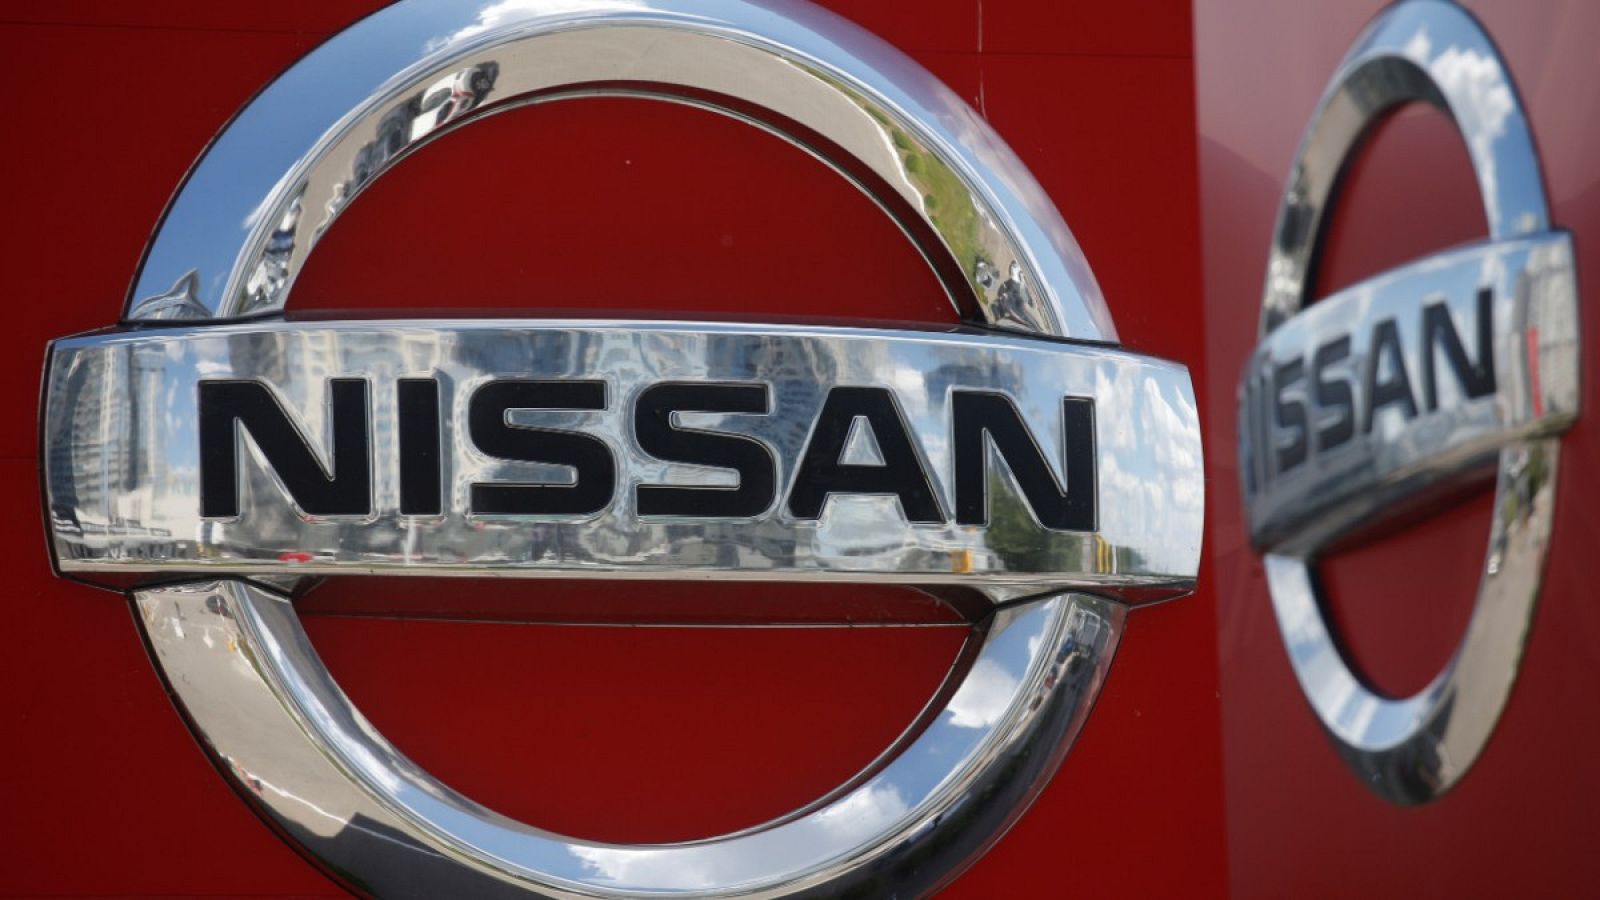 Empleo | Dirección y comité llegan a preacuerdo para la planta de Nissan de Cantabria